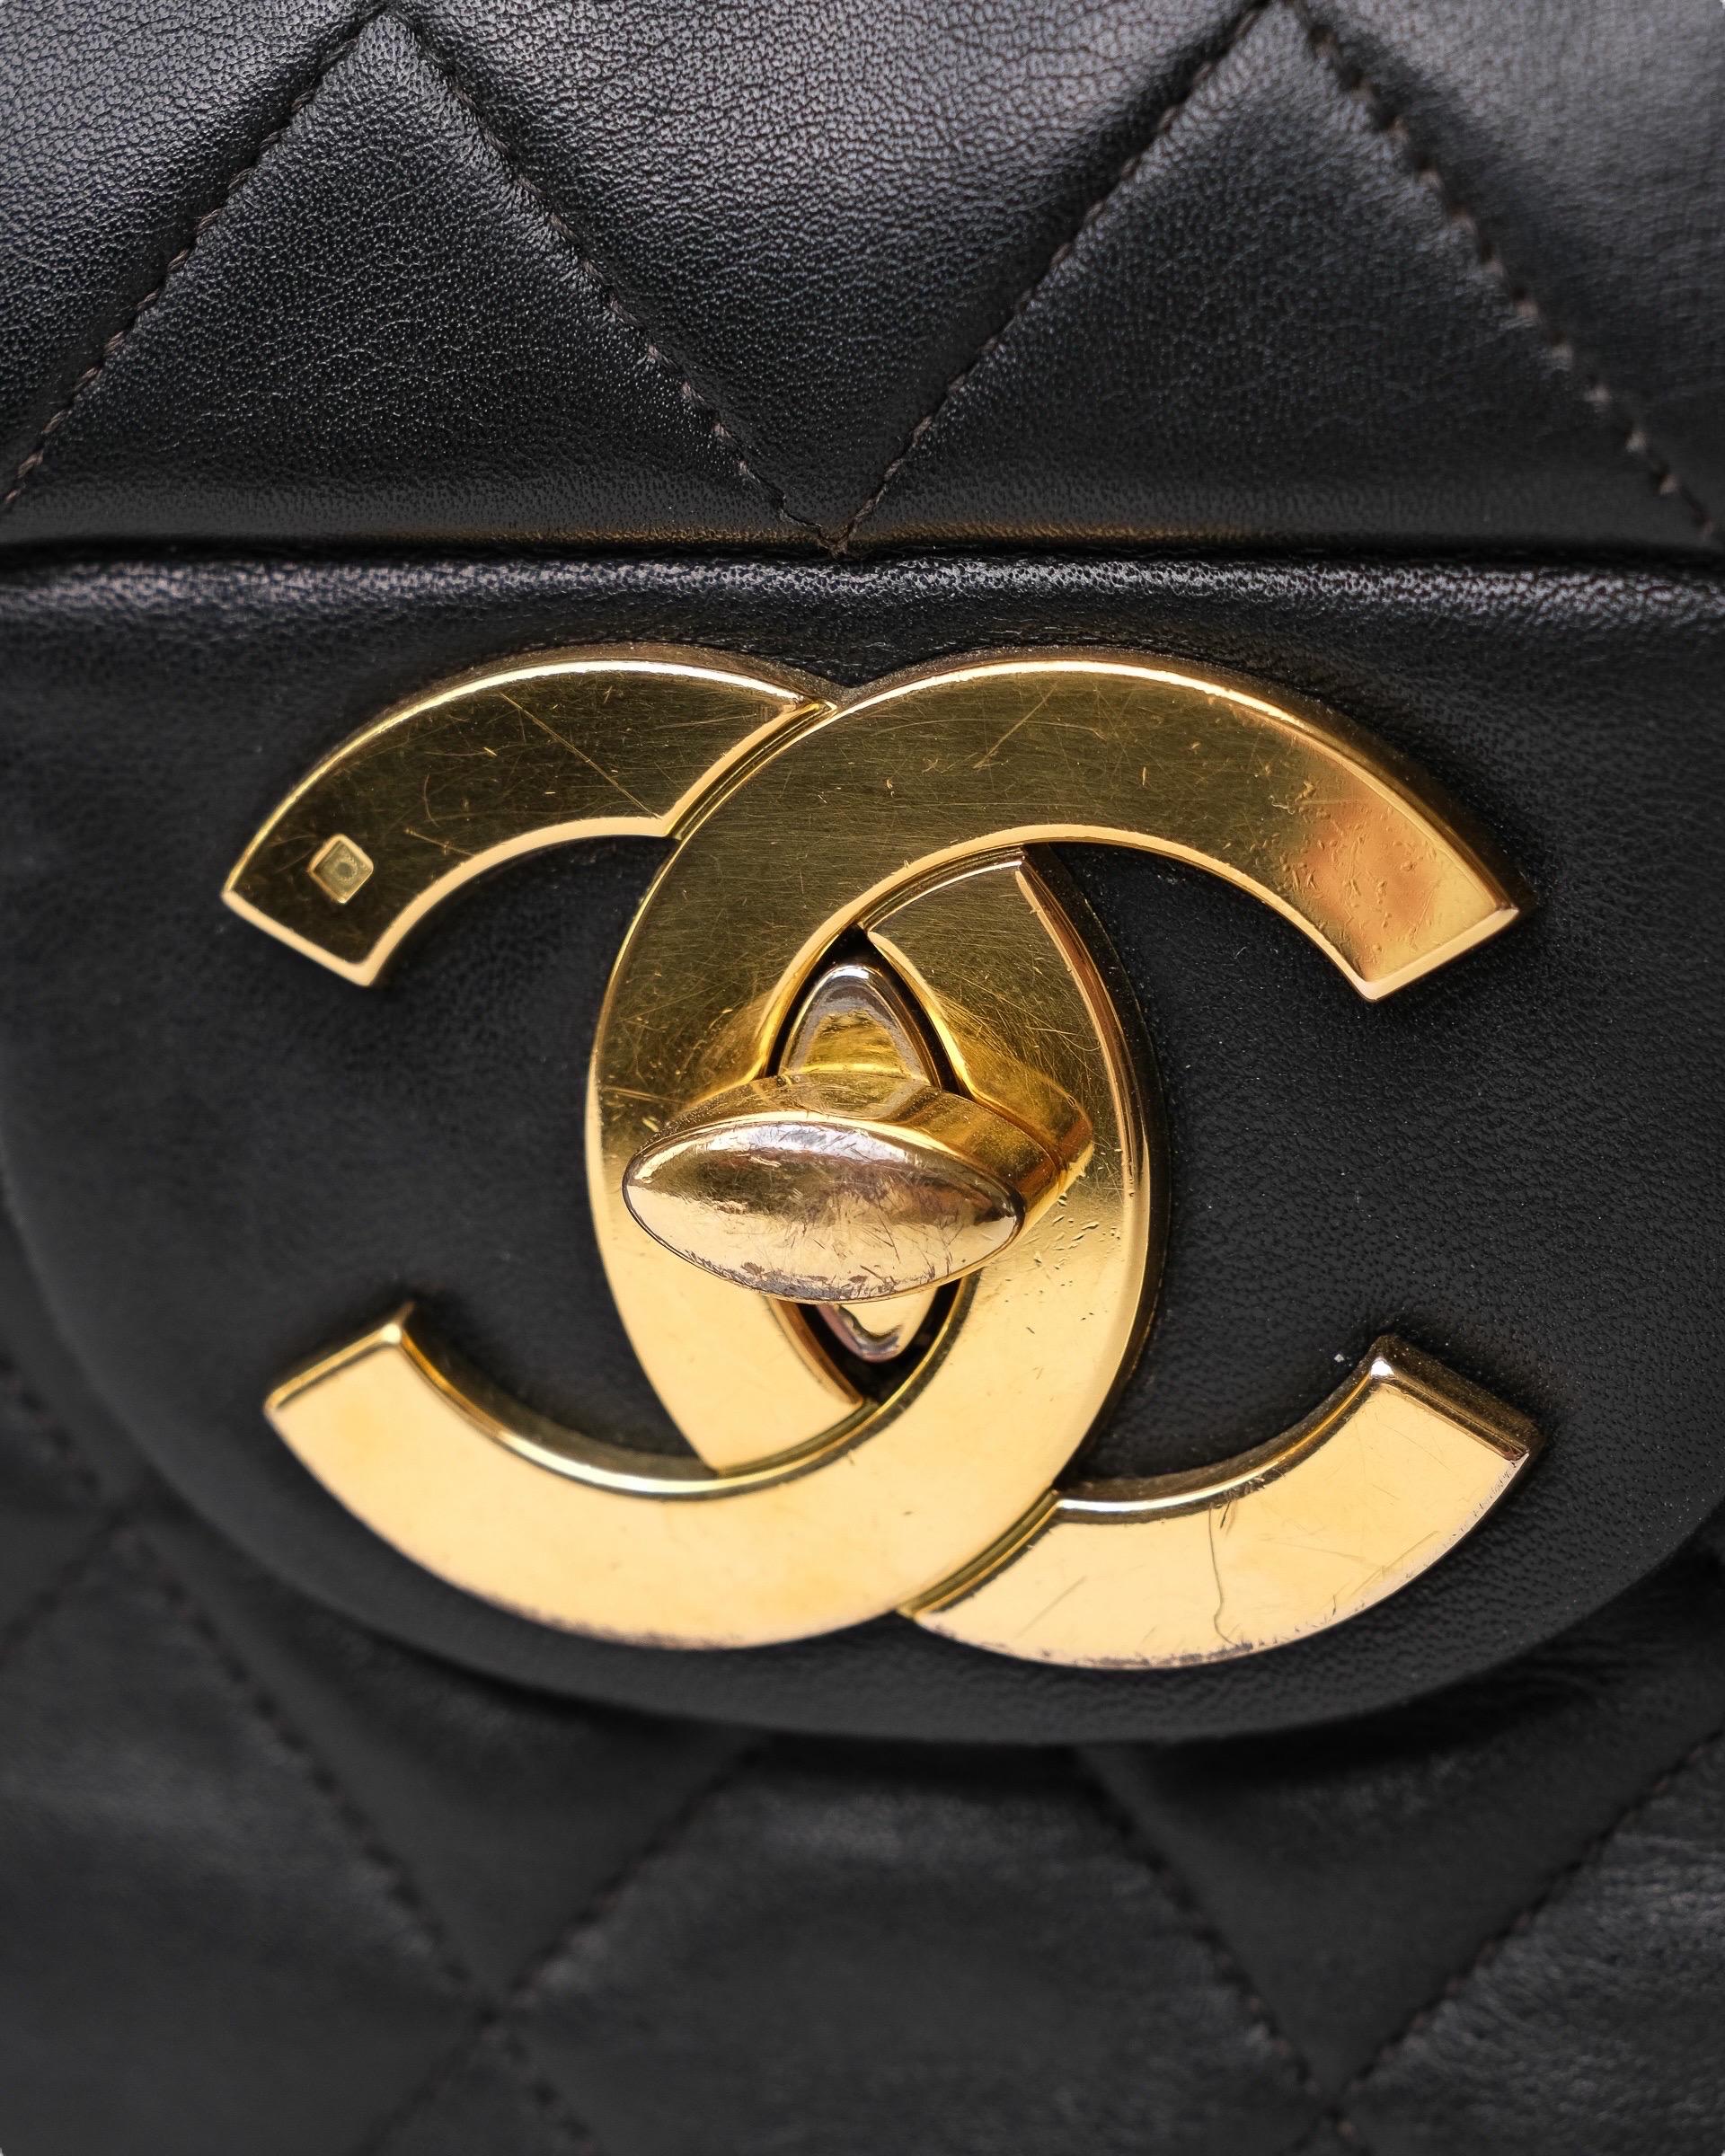 Borsa firmata Chanel, modello Timeless Vintage, misura Jumbo, realizzata in pelle liscia trapuntata nera con hardware dorati. Dotata di una patta con chiusura a girello logo CC, internamente rivestita in pelle liscia bordeaux, molto capiente,